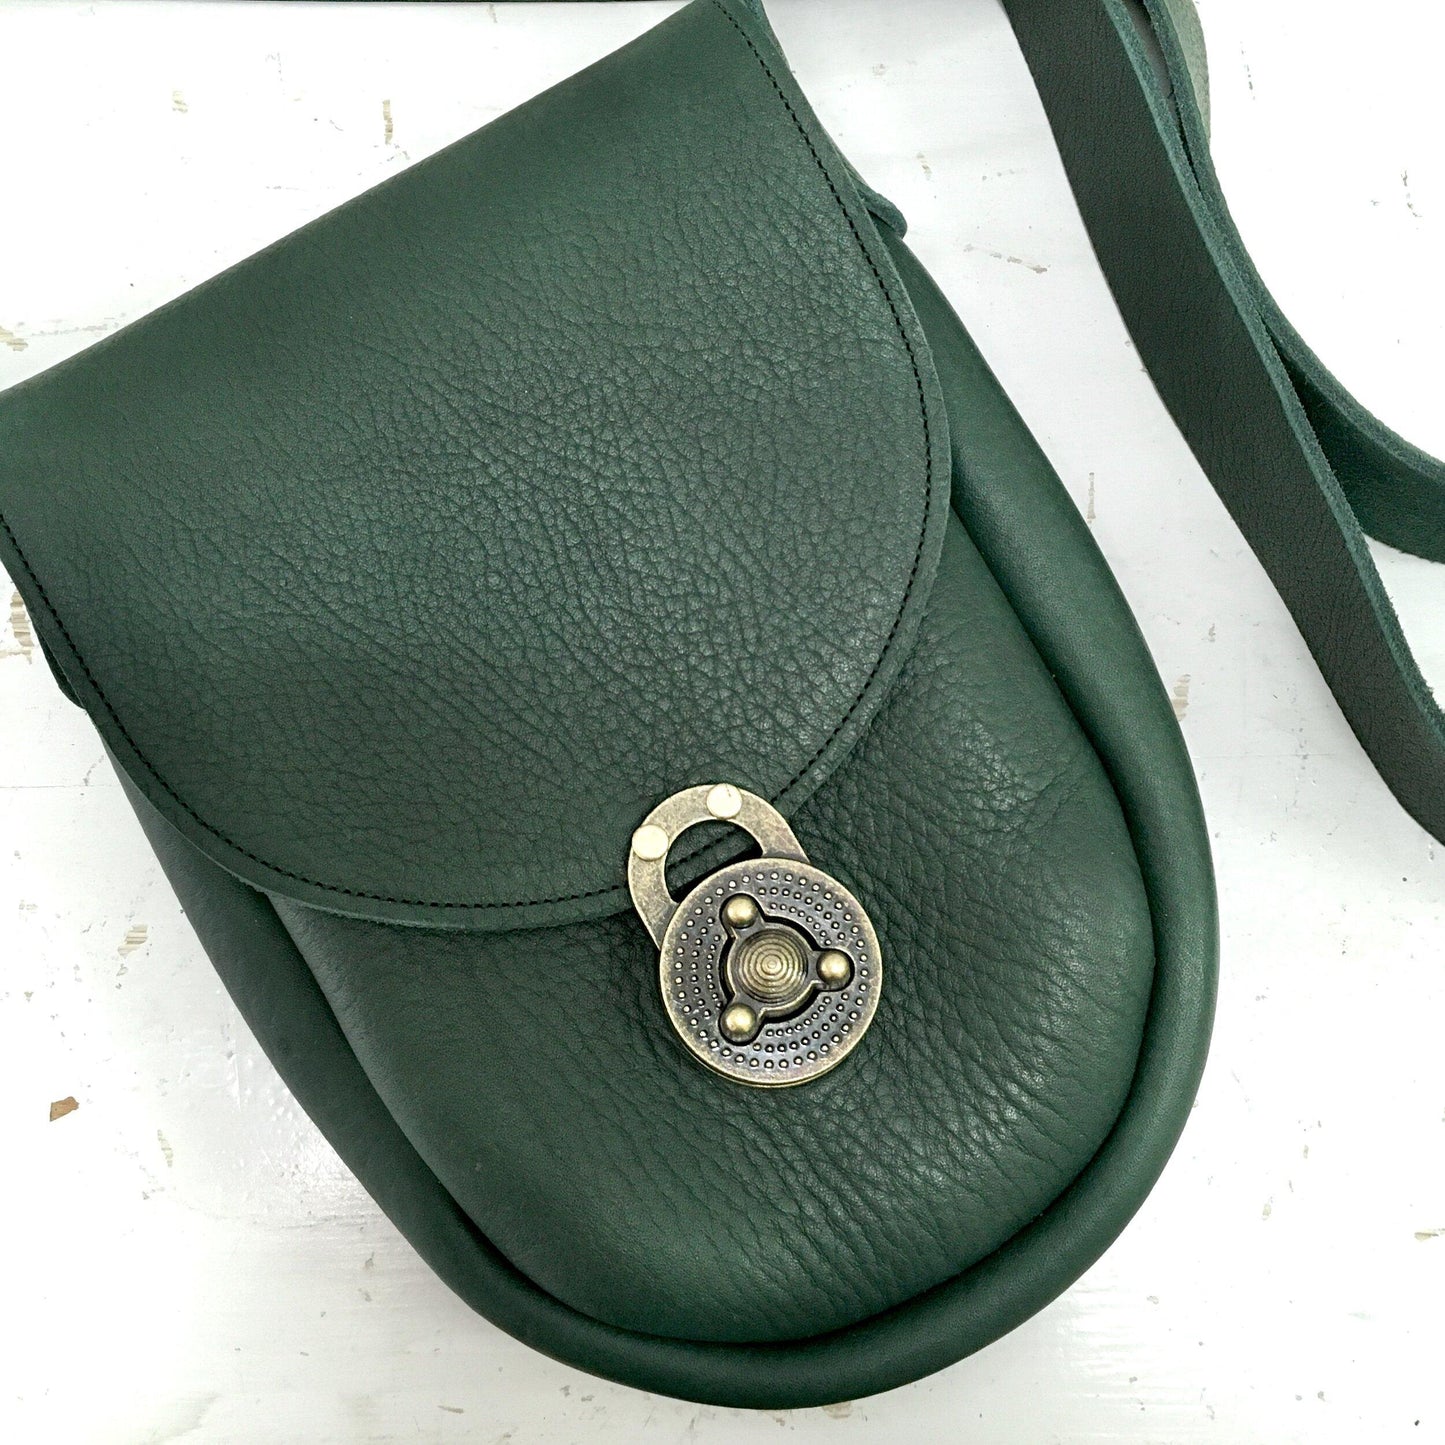 Ginger Crossbody Handbag in Green Bullhide